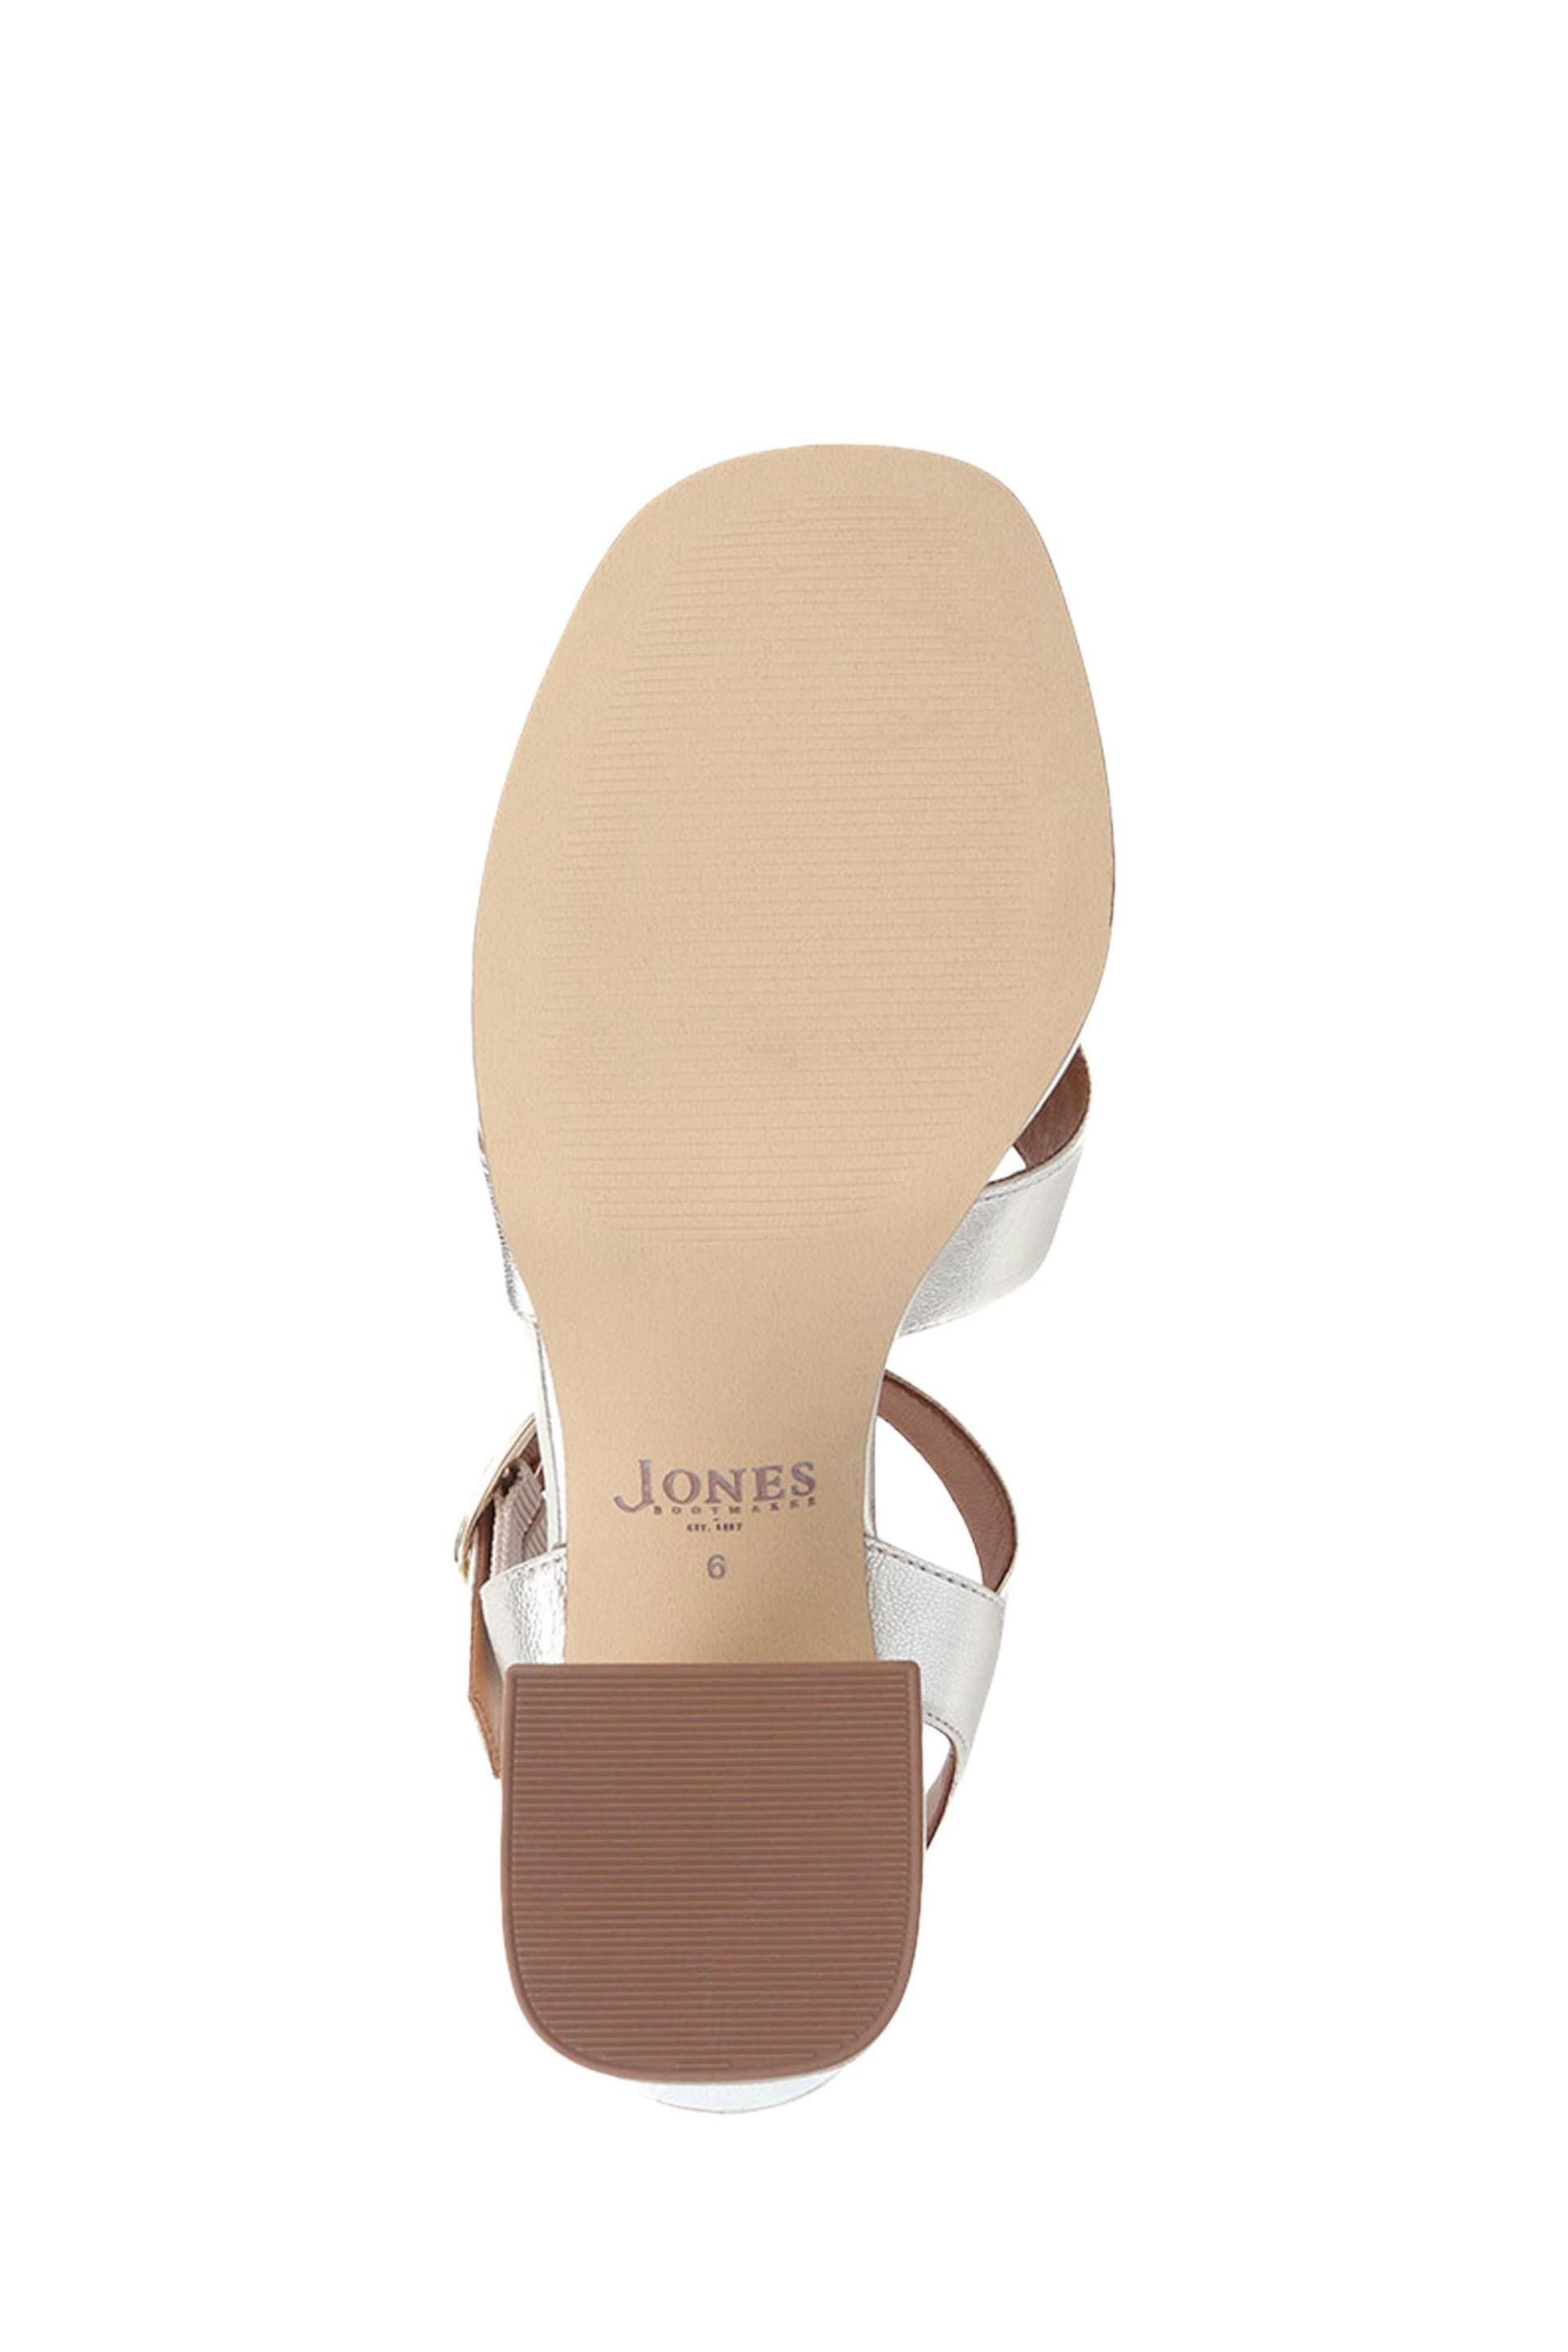 Jones Bootmaker Gladiola 2 Leather Platform Sandals - Image 6 of 6